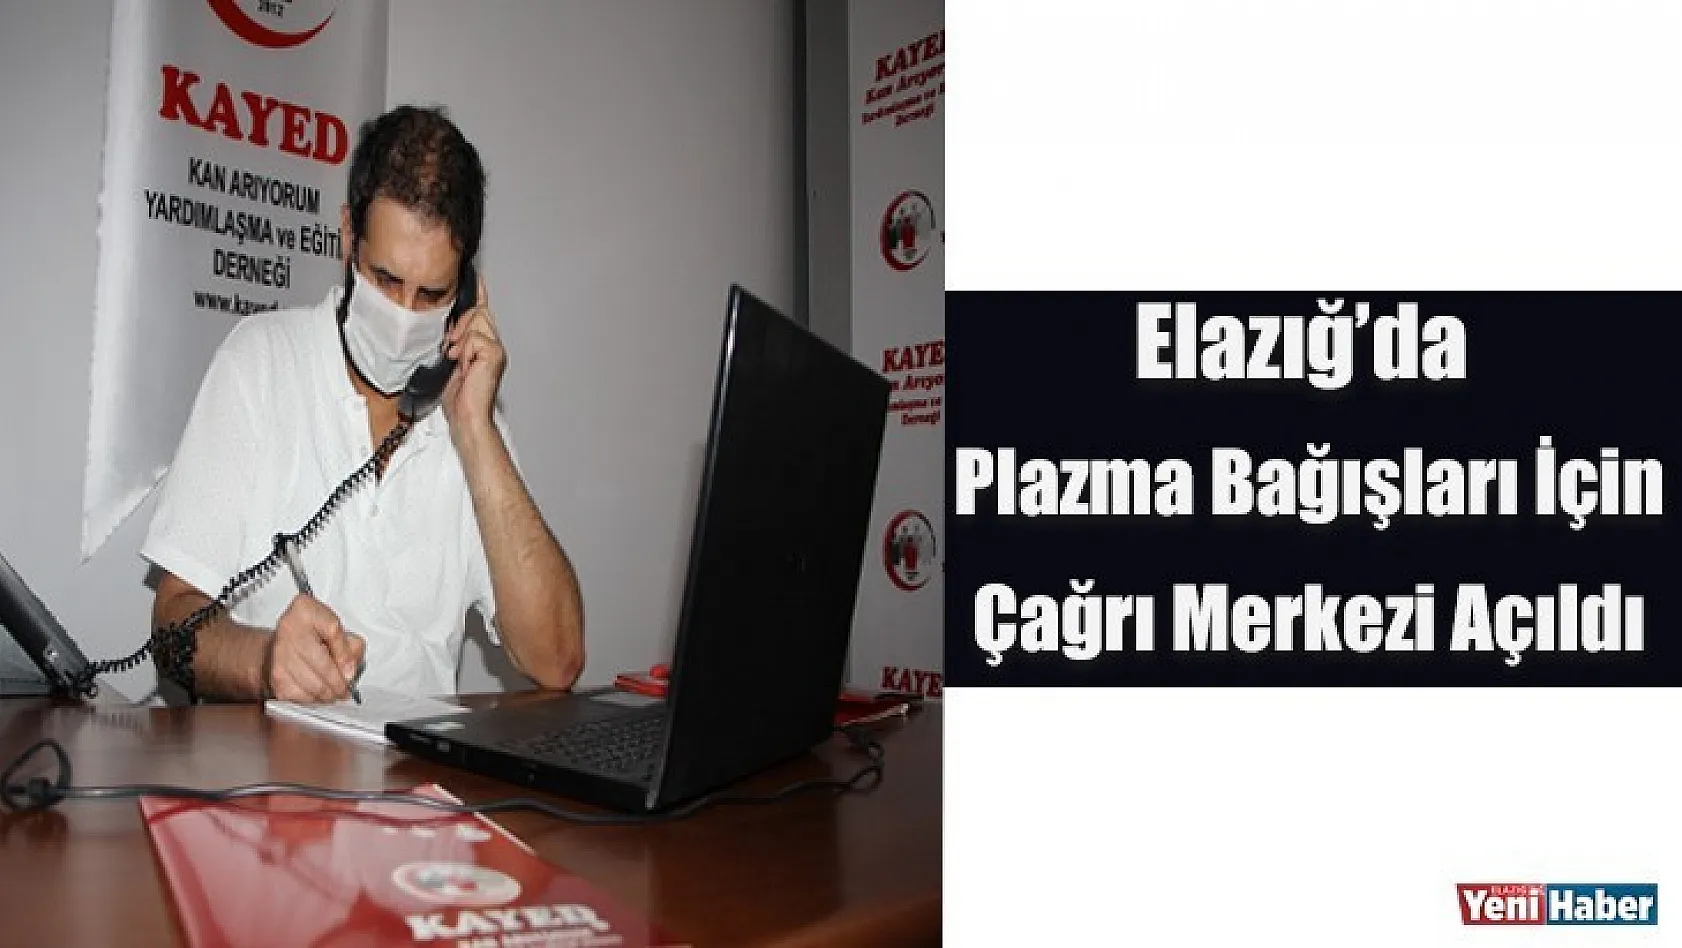 Elazığ'da Plazma Bağışları İçin Çağrı Merkezi Açıldı